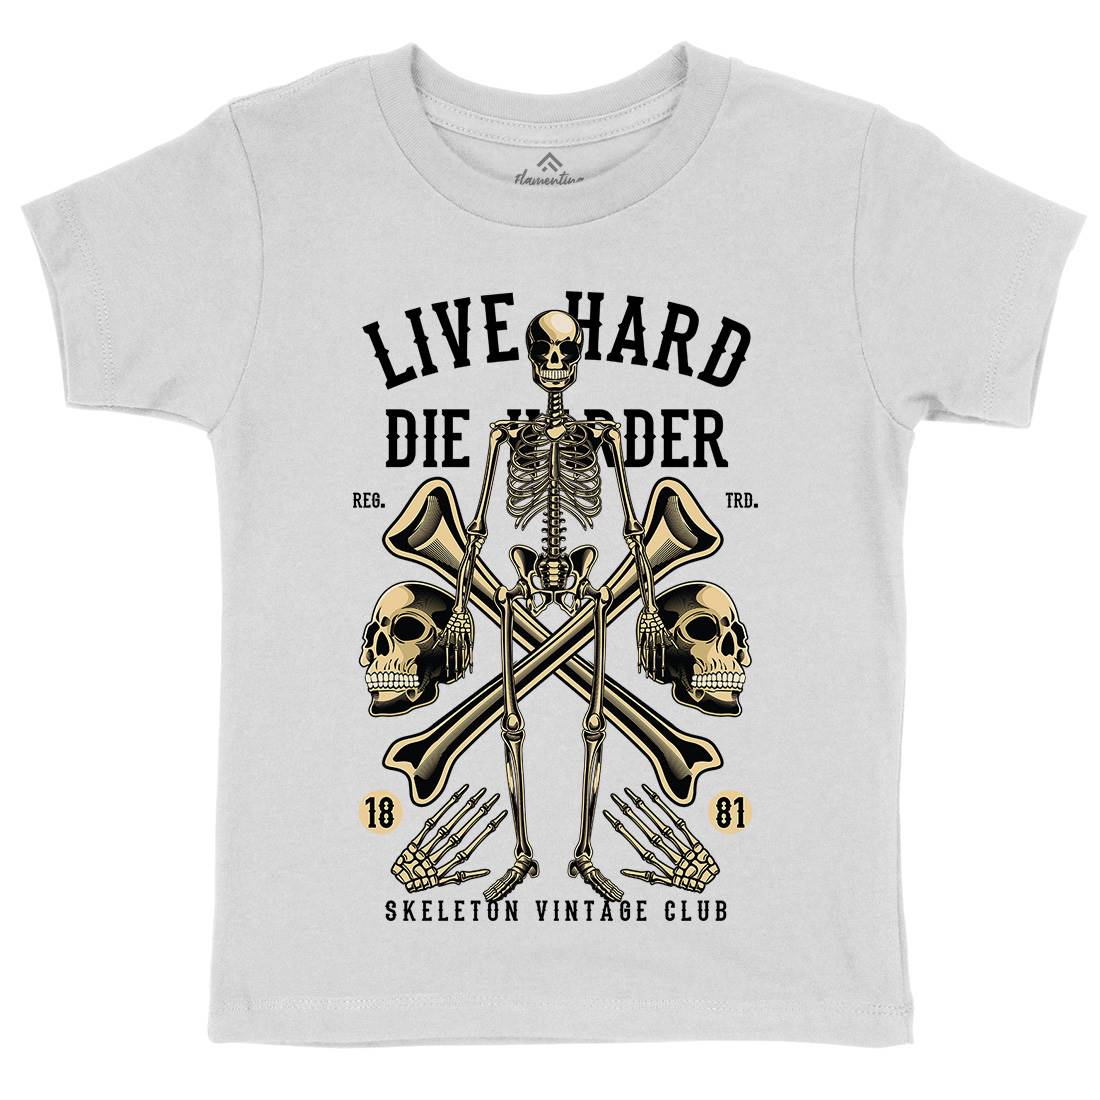 Live Hard Die Harder Kids Crew Neck T-Shirt Retro C387